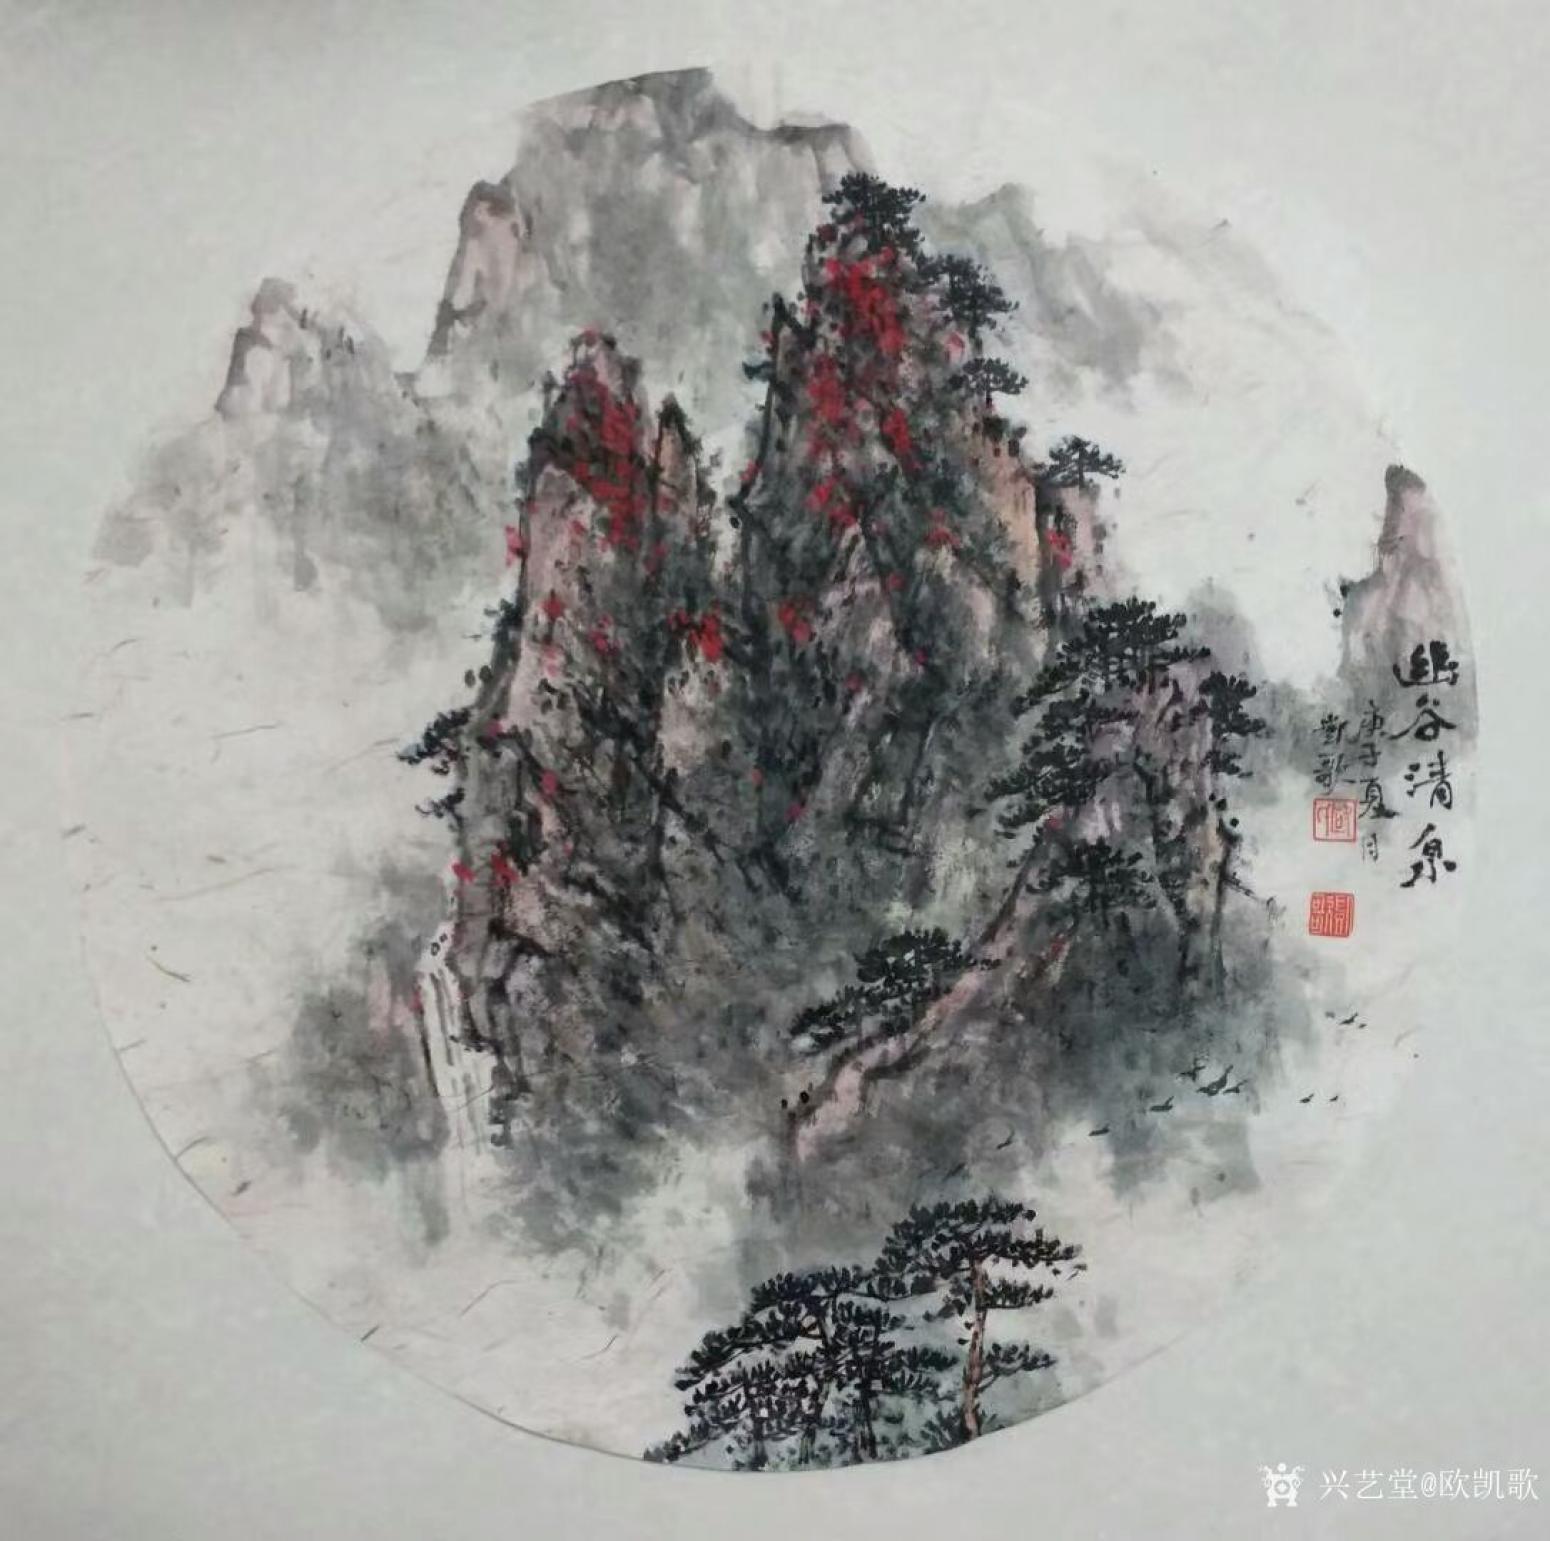 欧凯歌国画作品《山水-幽谷清泉》